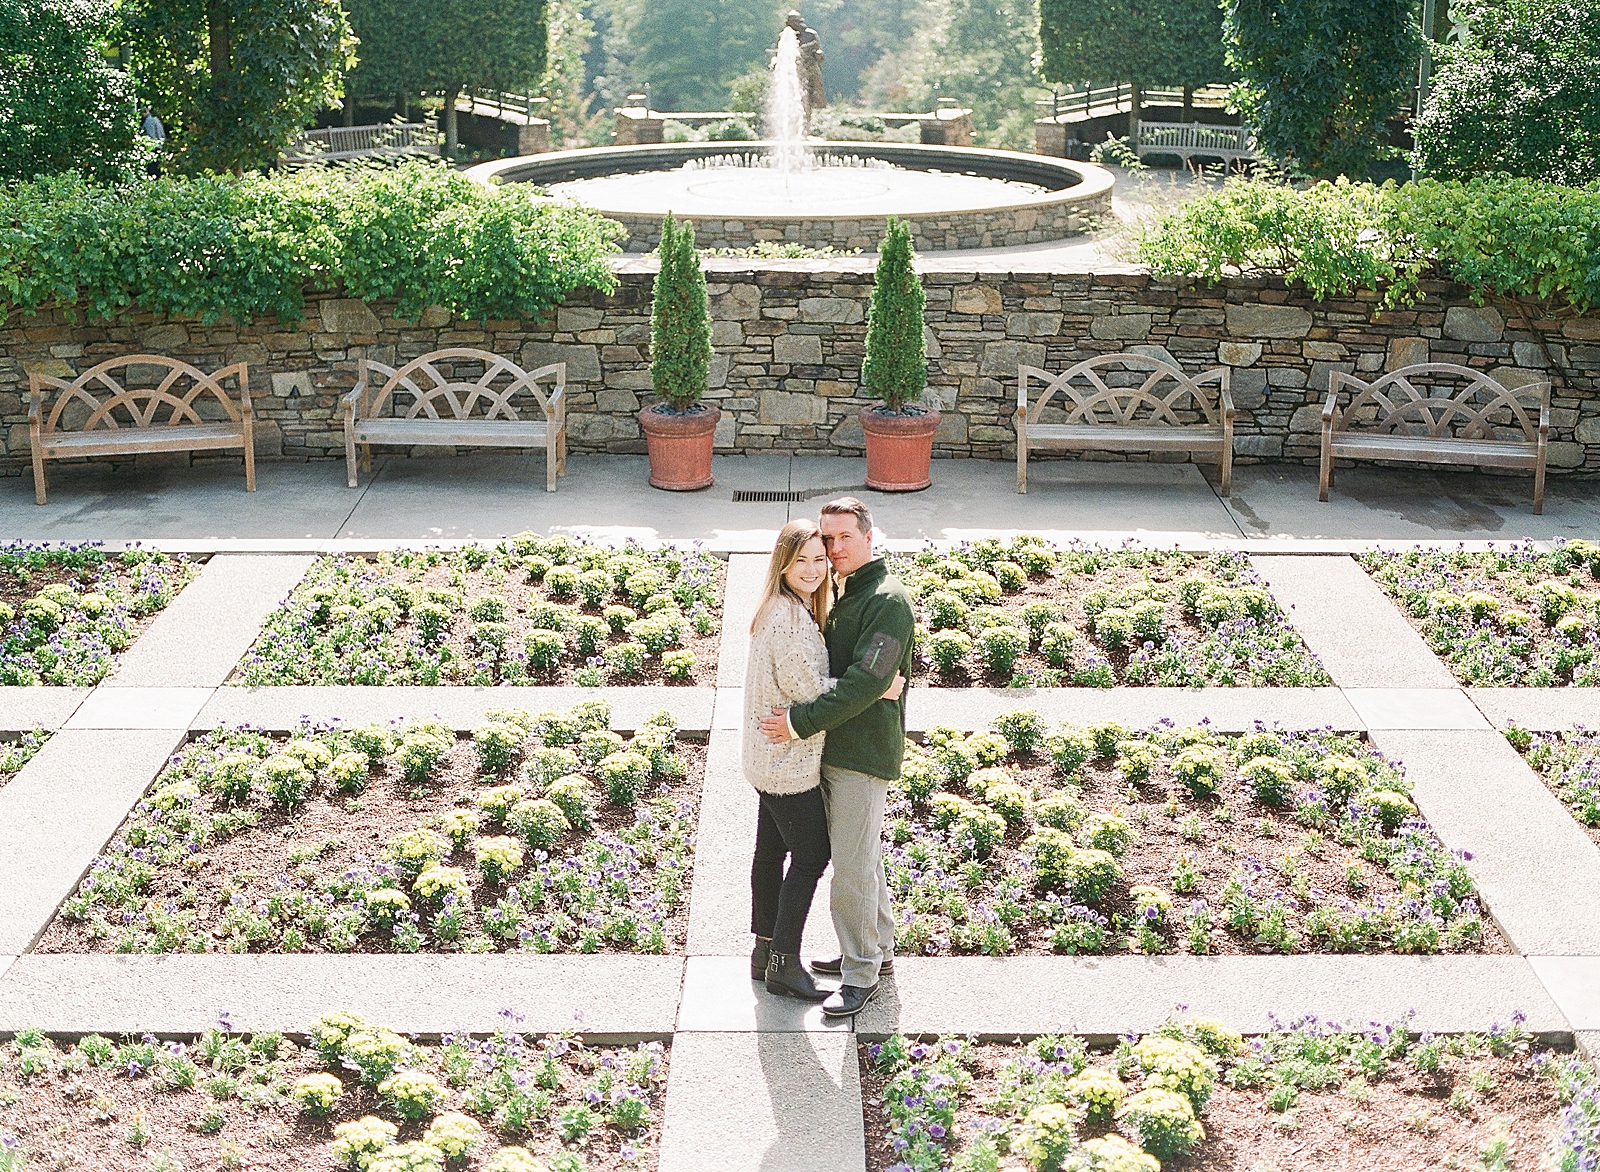 North Carolina Arboretum Couple Smiling at Camera in Garden Photo